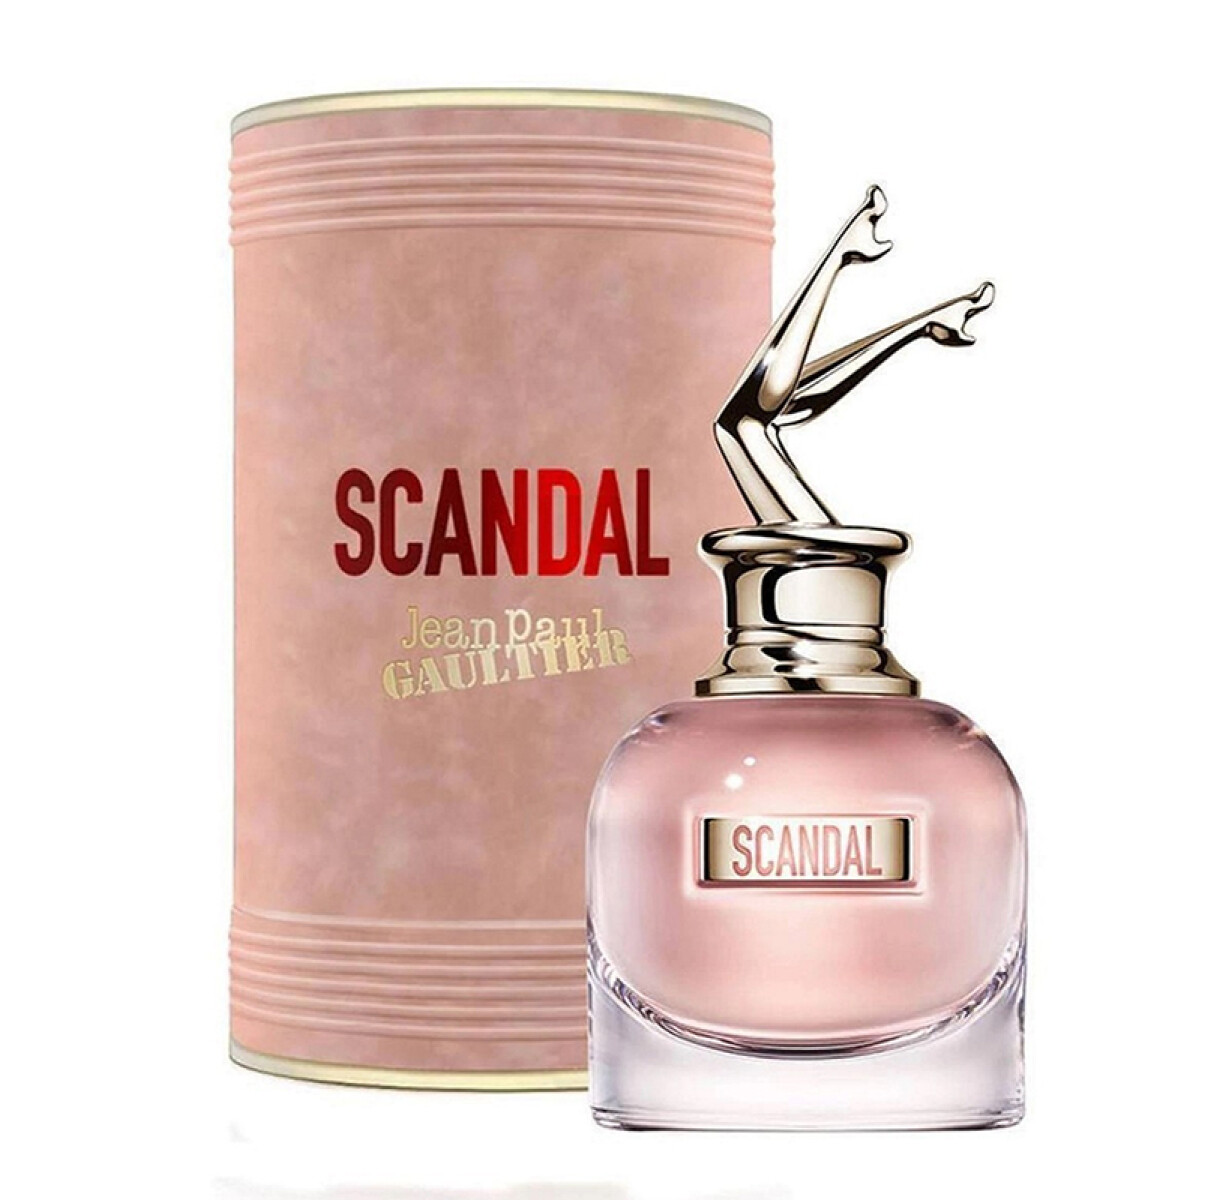 Jean Paul Gaultier Scandal eau de parfum - 50 ml 